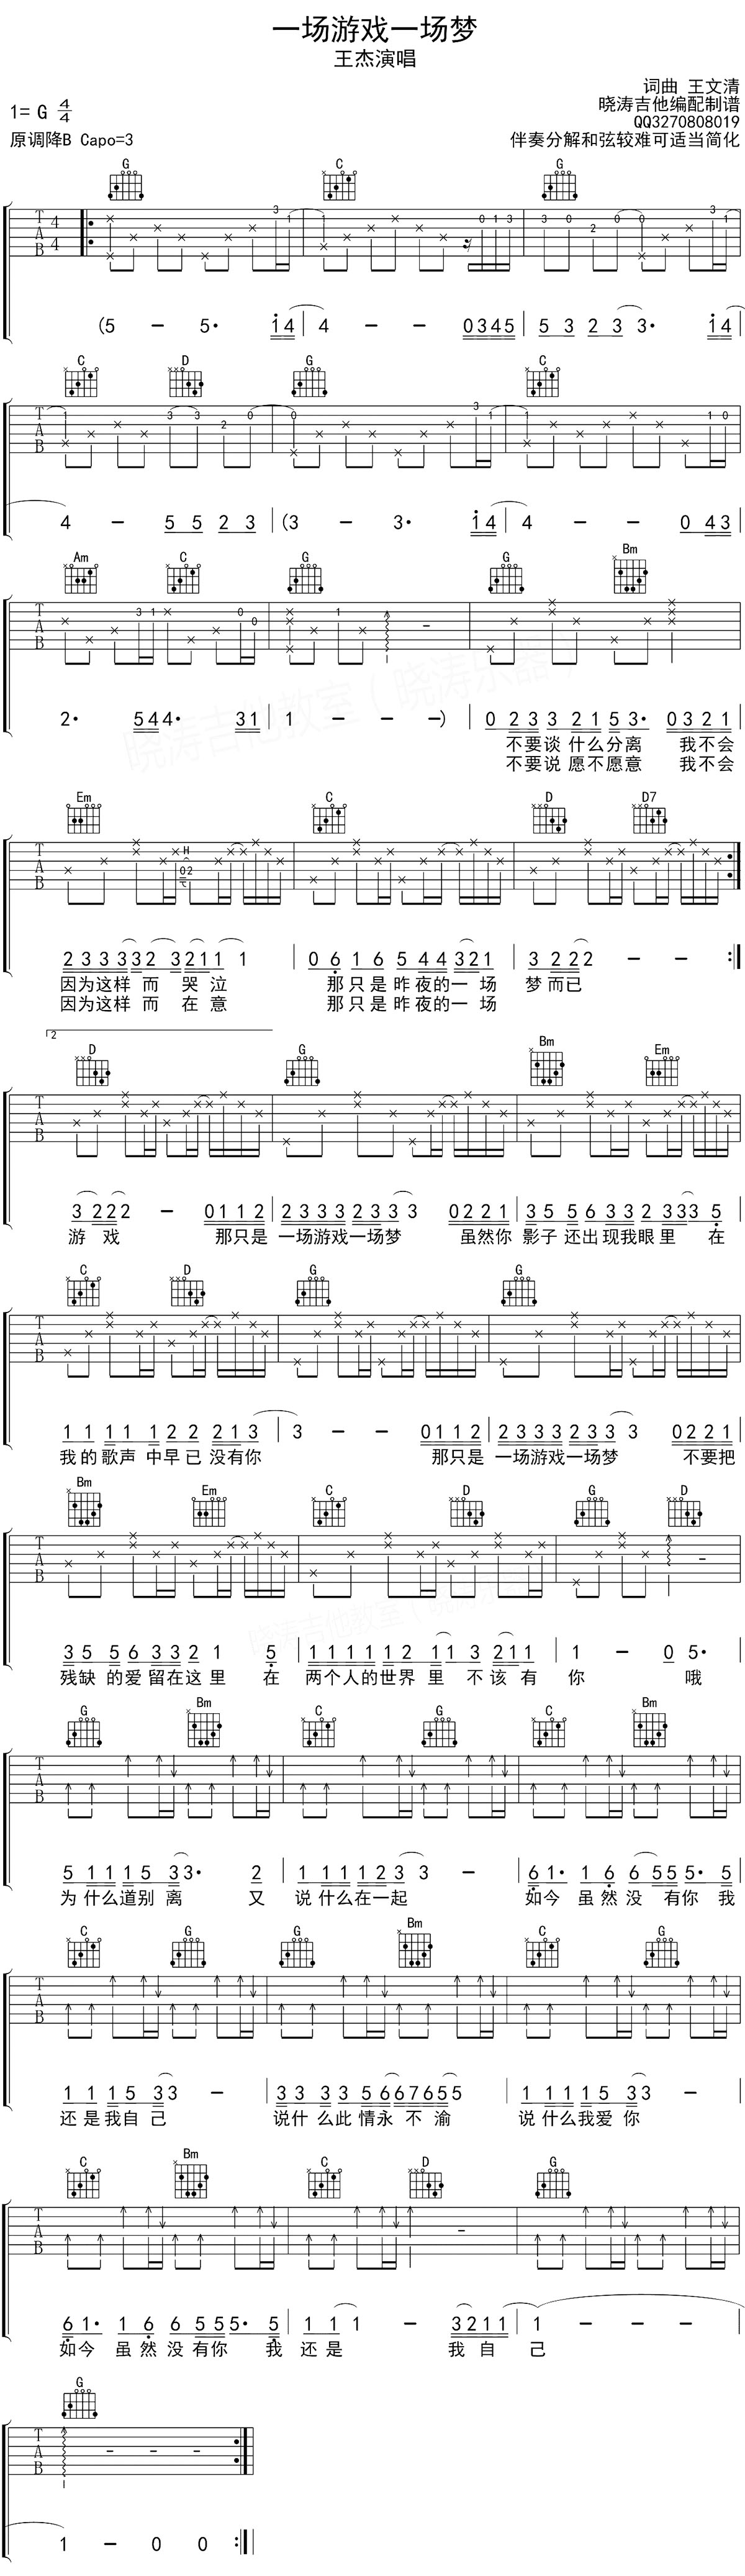 齐秦《一场游戏一场梦》吉他谱-Guitar Music Score - GTP吉他谱